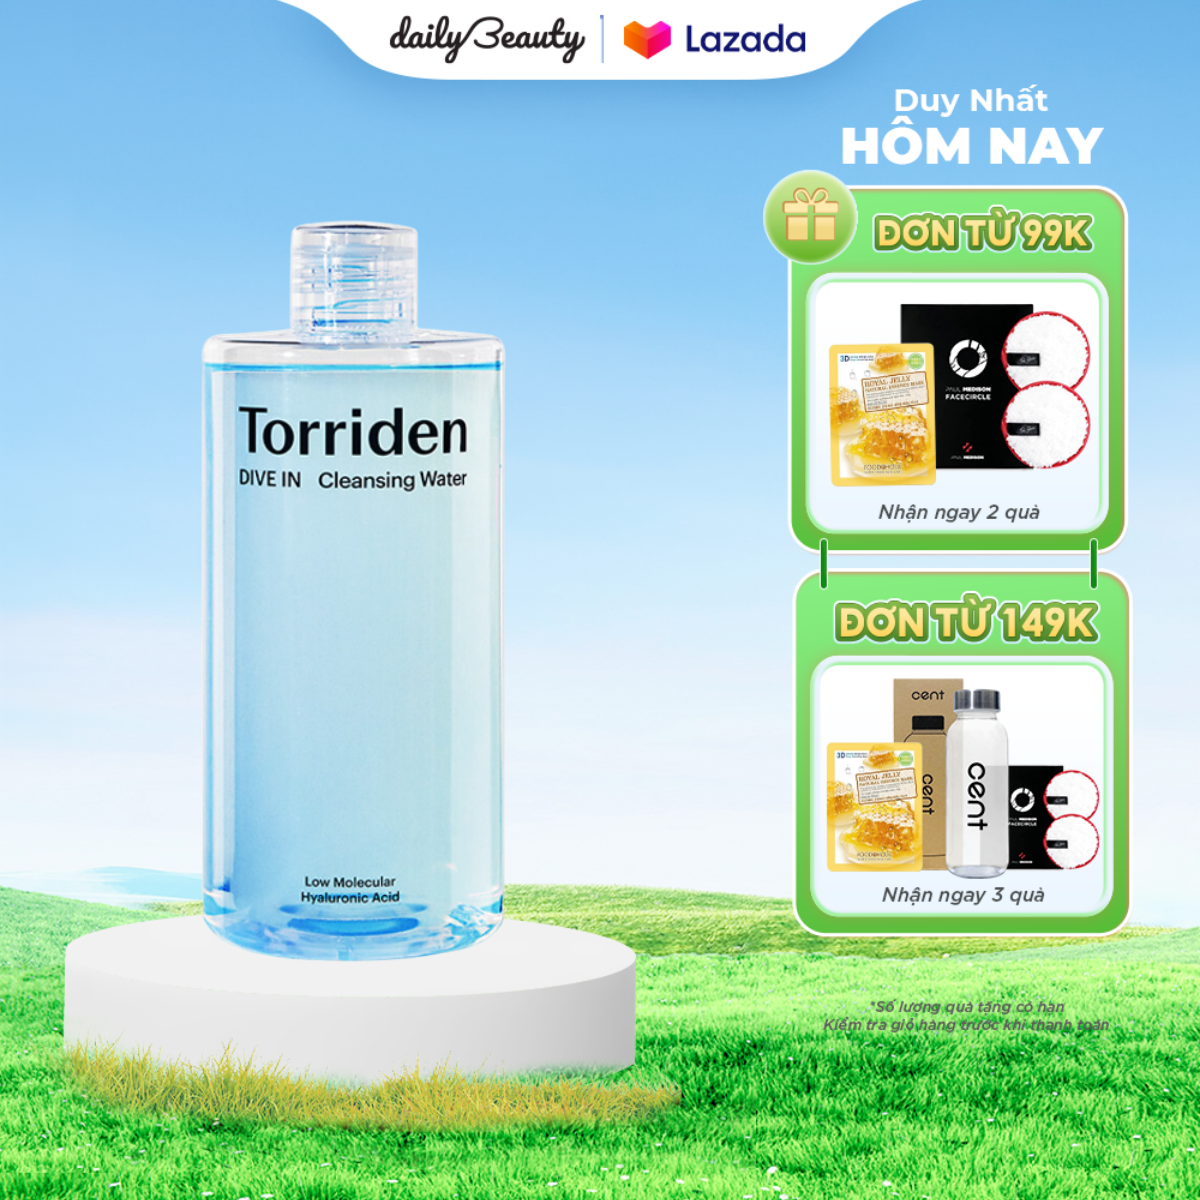 Nước tẩy trang Torriden DIVE IN Low Molecular Hyaluronic Acid Cleansing Water 400ml làm sạch &amp; dưỡng ẩm da Daily Beauty